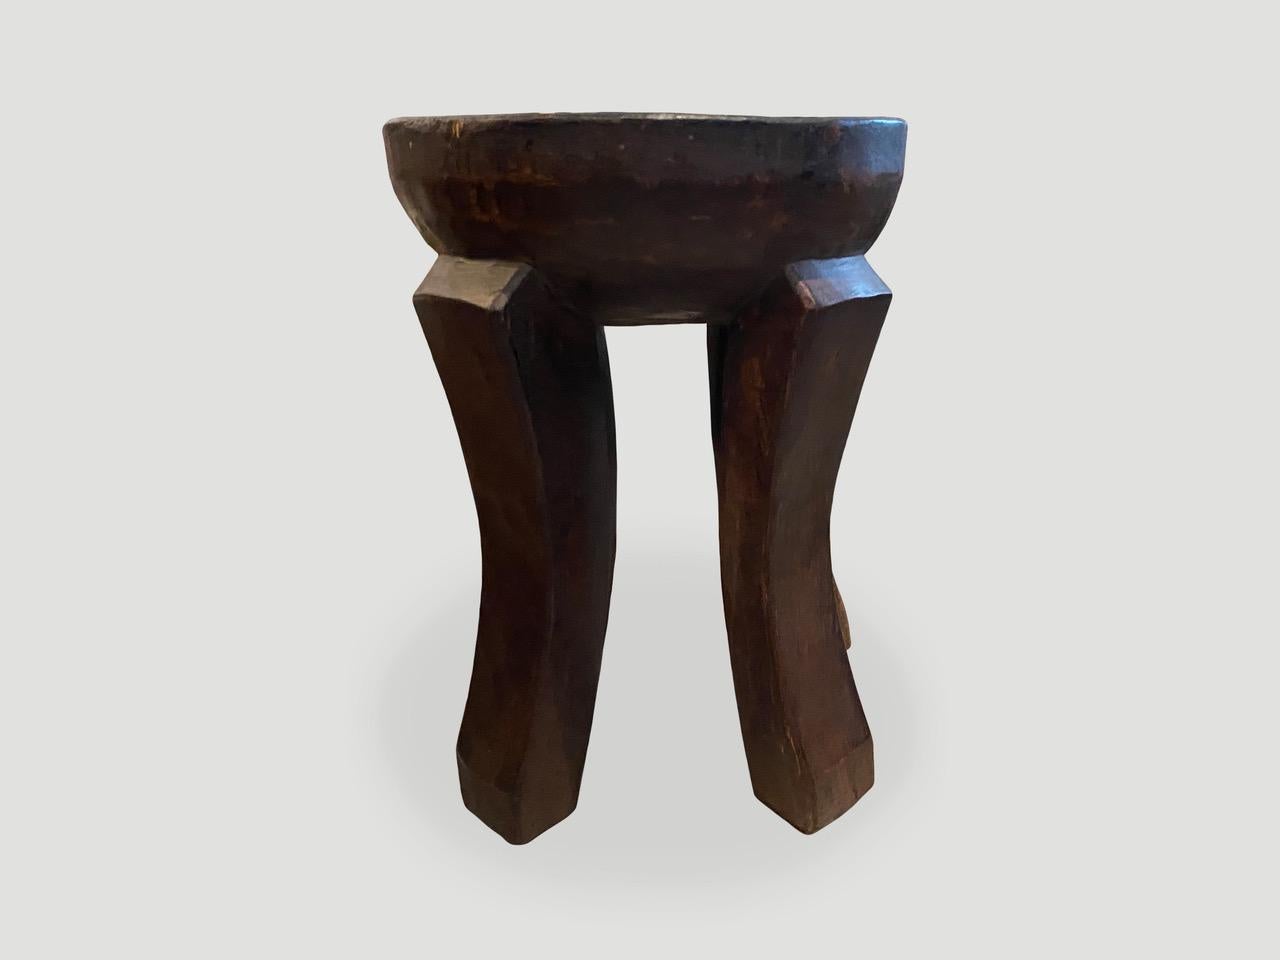 Table d'appoint ou tabouret africain antique sculpté à la main à partir d'un seul bloc de bois d'acajou. Le dessus est un épais biseau avec de beaux pieds sculptés à la main et une belle patine. Ces tabourets sont devenus des objets de collection